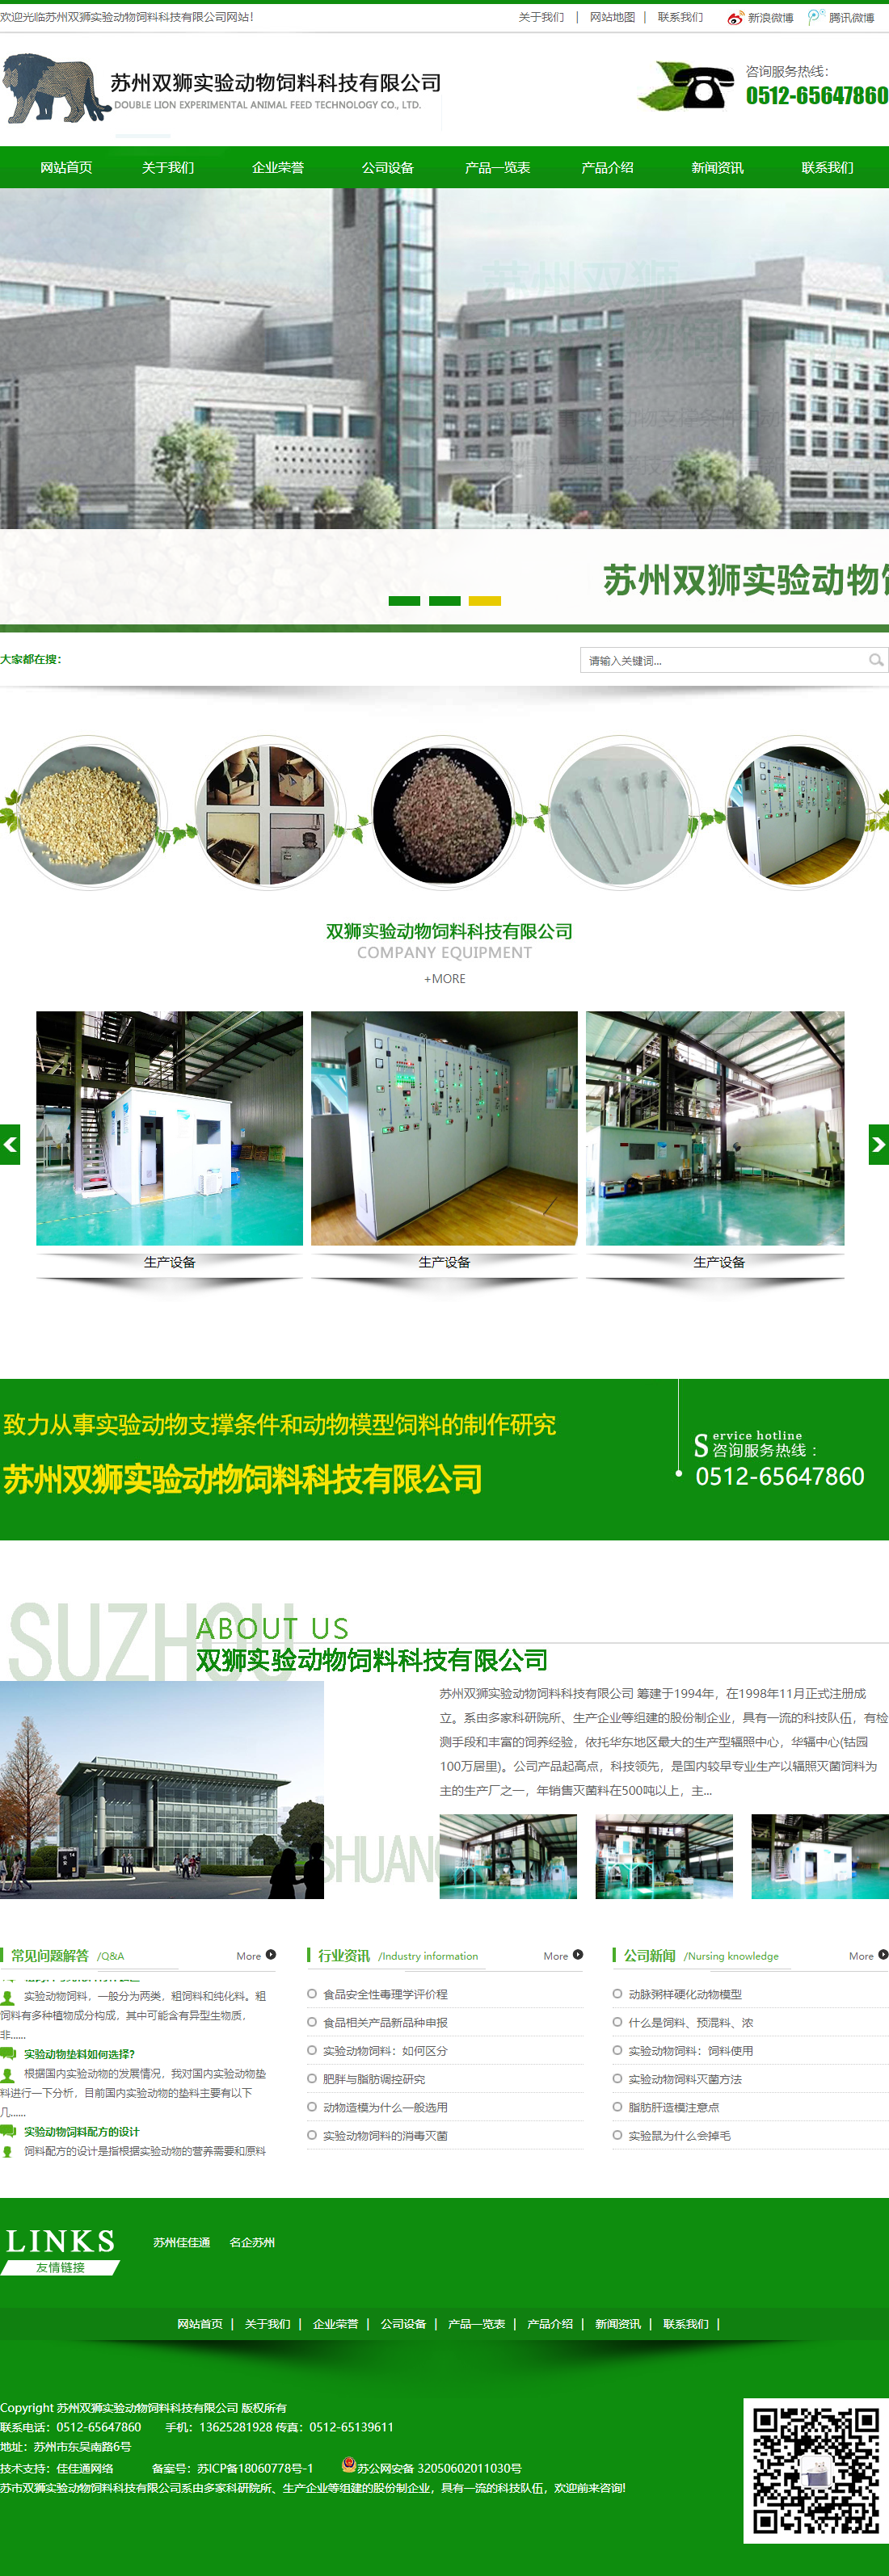 苏州双狮实验动物饲料科技有限公司网站案例